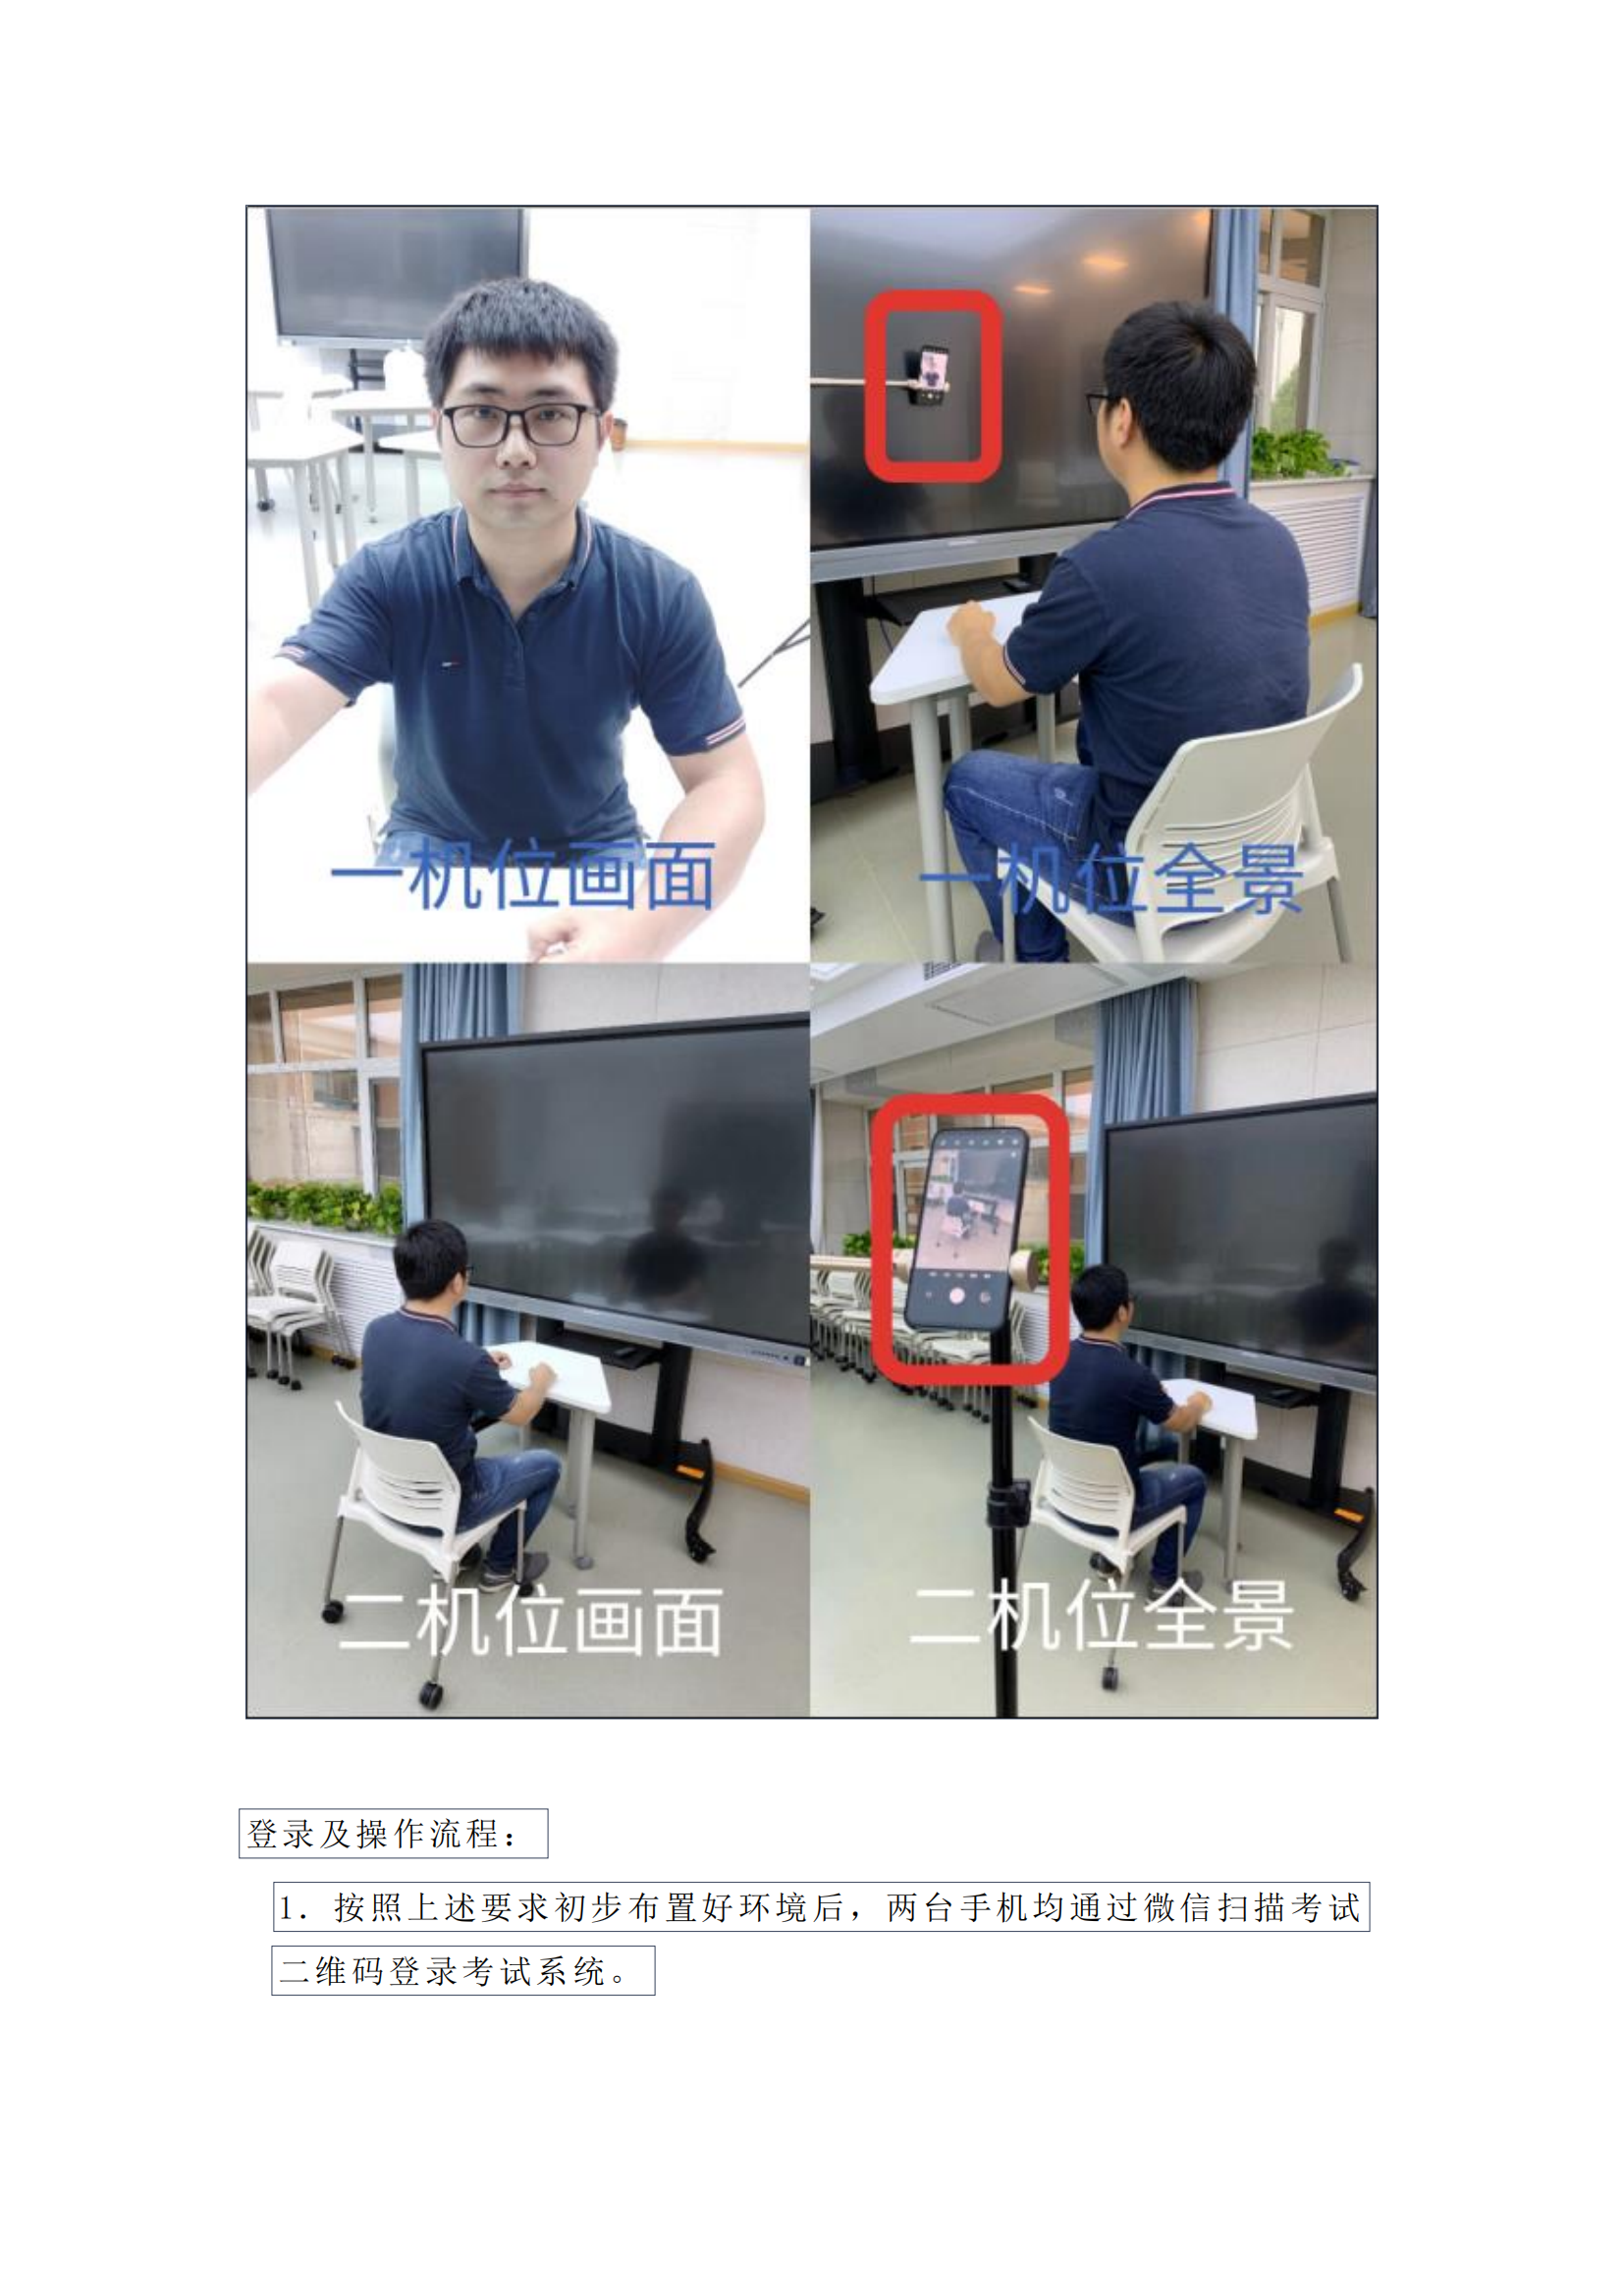 中国戏曲学院2022年本科招生远程笔试操作说明_01.png